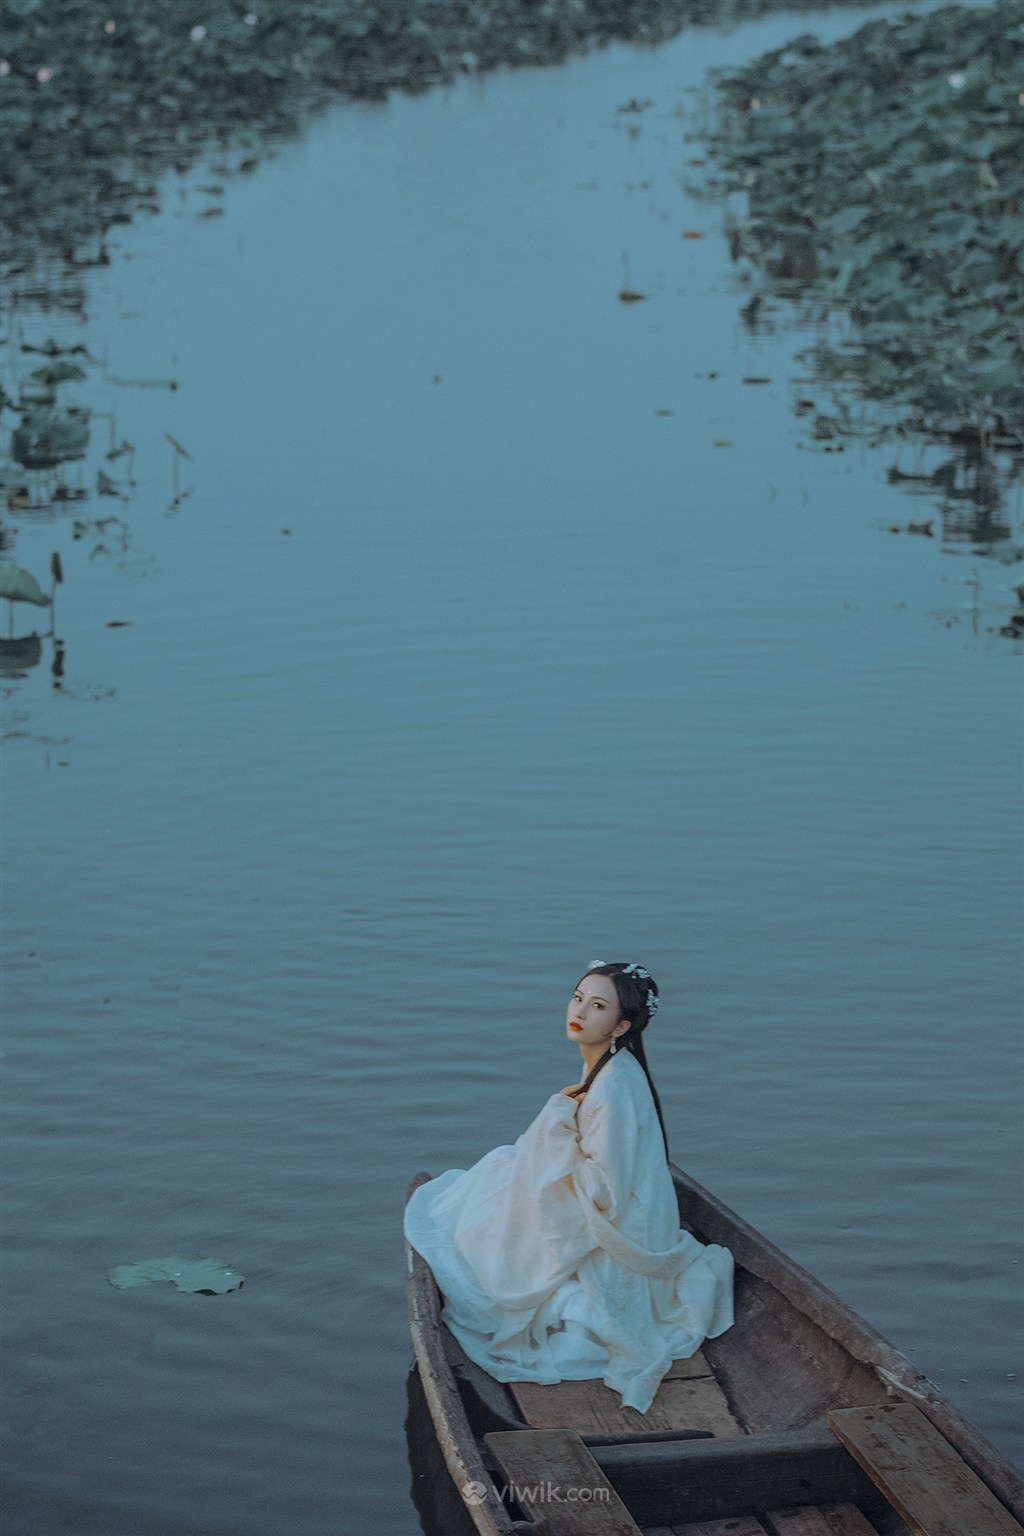 小船上穿旗袍的美女模特 - 免费可商用图片 - CC0素材网